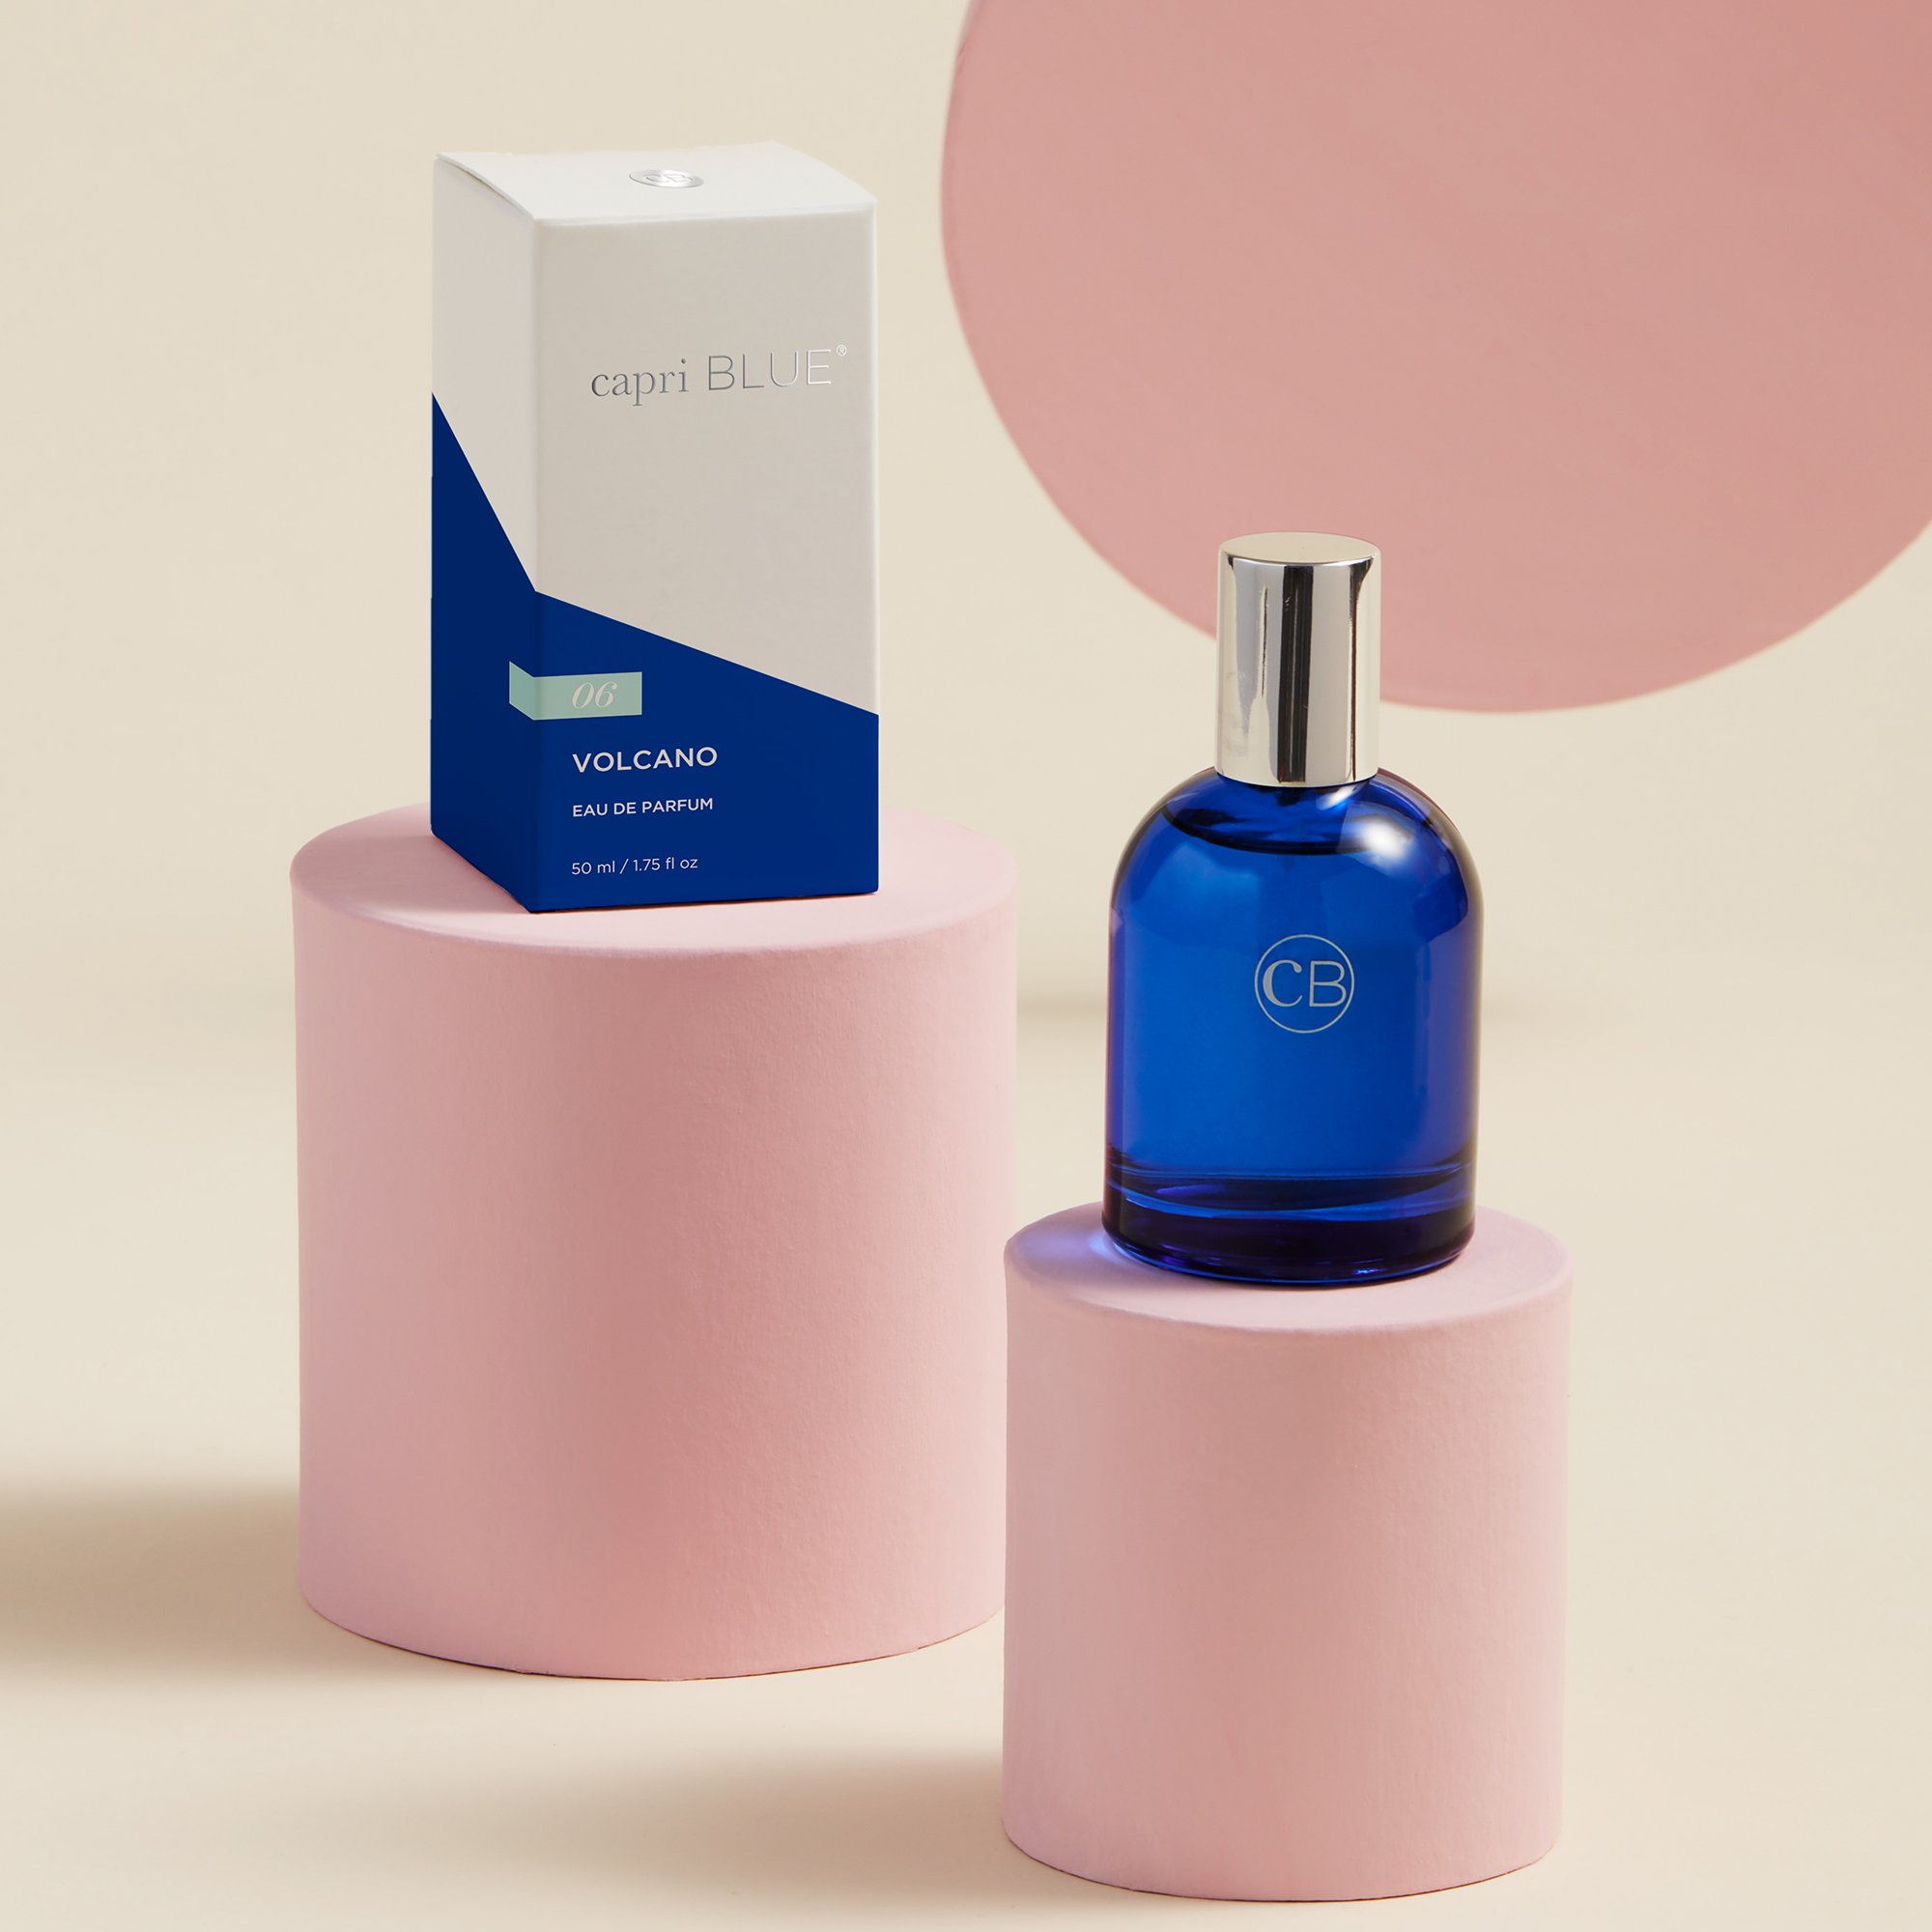 Capri Blue Eau de Parfum - Volcano - 1.75 fl oz